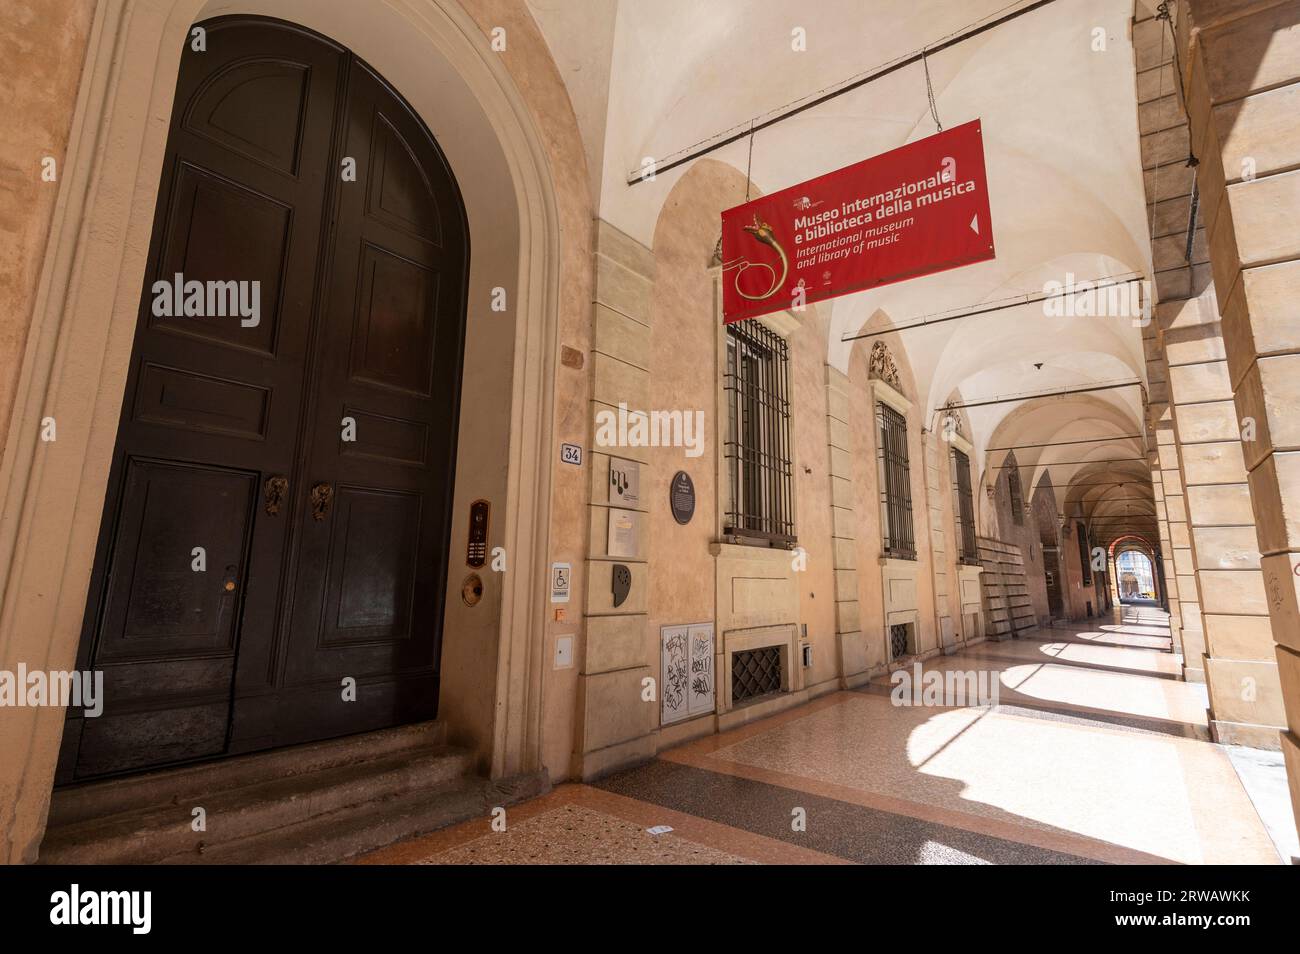 Das Museo internazionale e biblioteca della musica ist ein Musikmuseum und eine Musikbibliothek im Palazzo Aldini Sanguinetti an der Str. Maggiore in Bologna Stockfoto